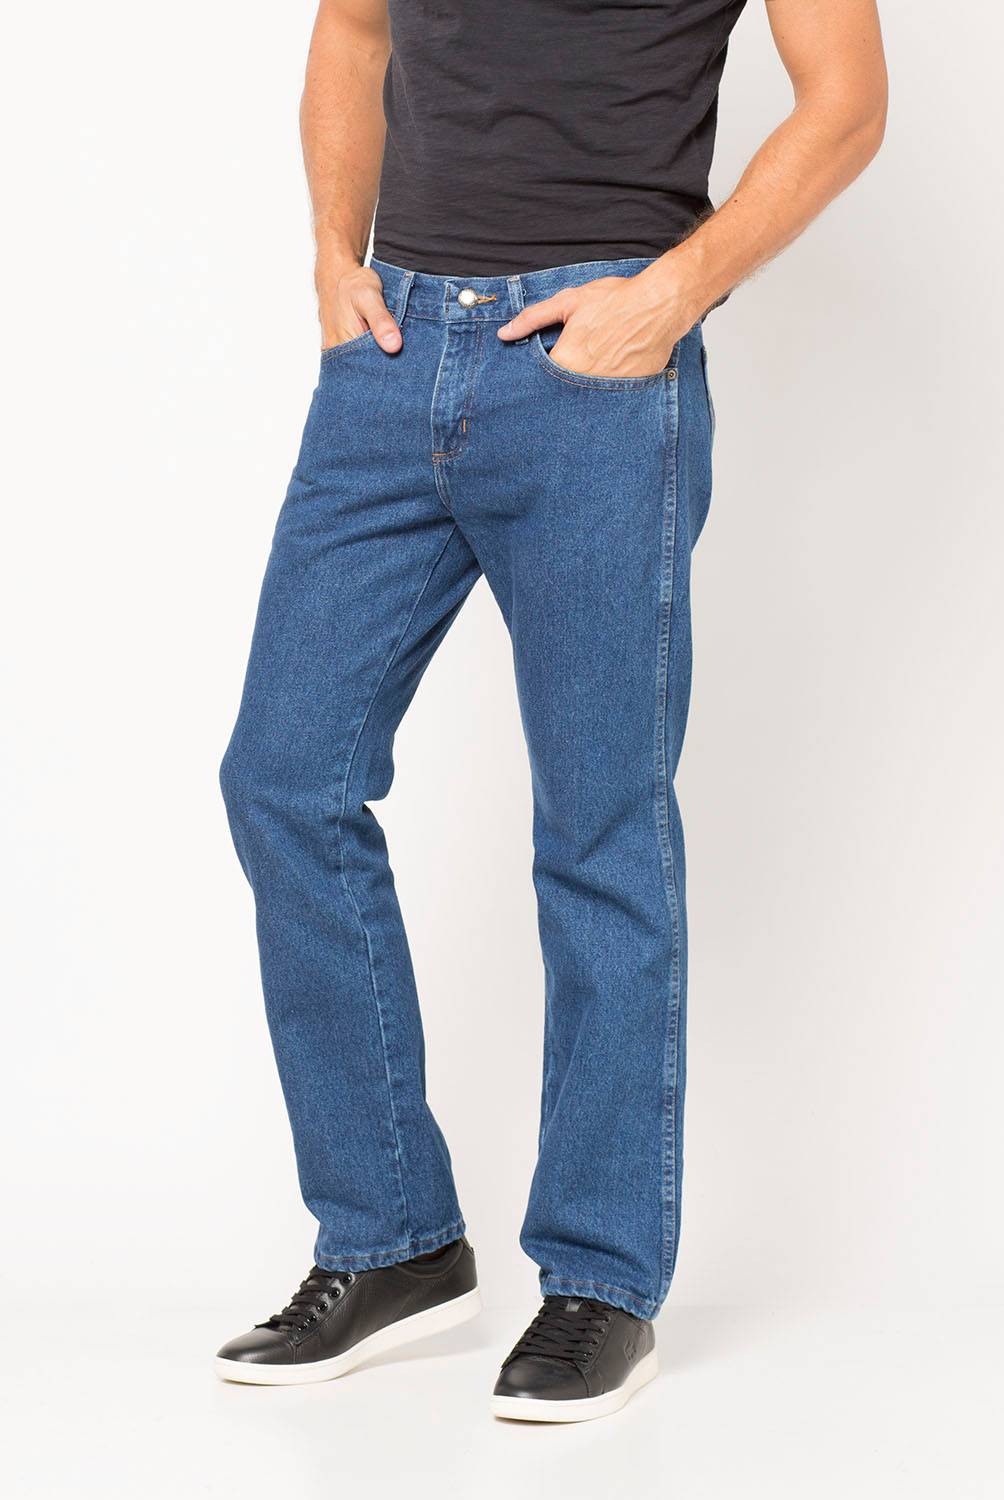 WRANGLER Jeans Texas Regular Fit Hombre Wrangler